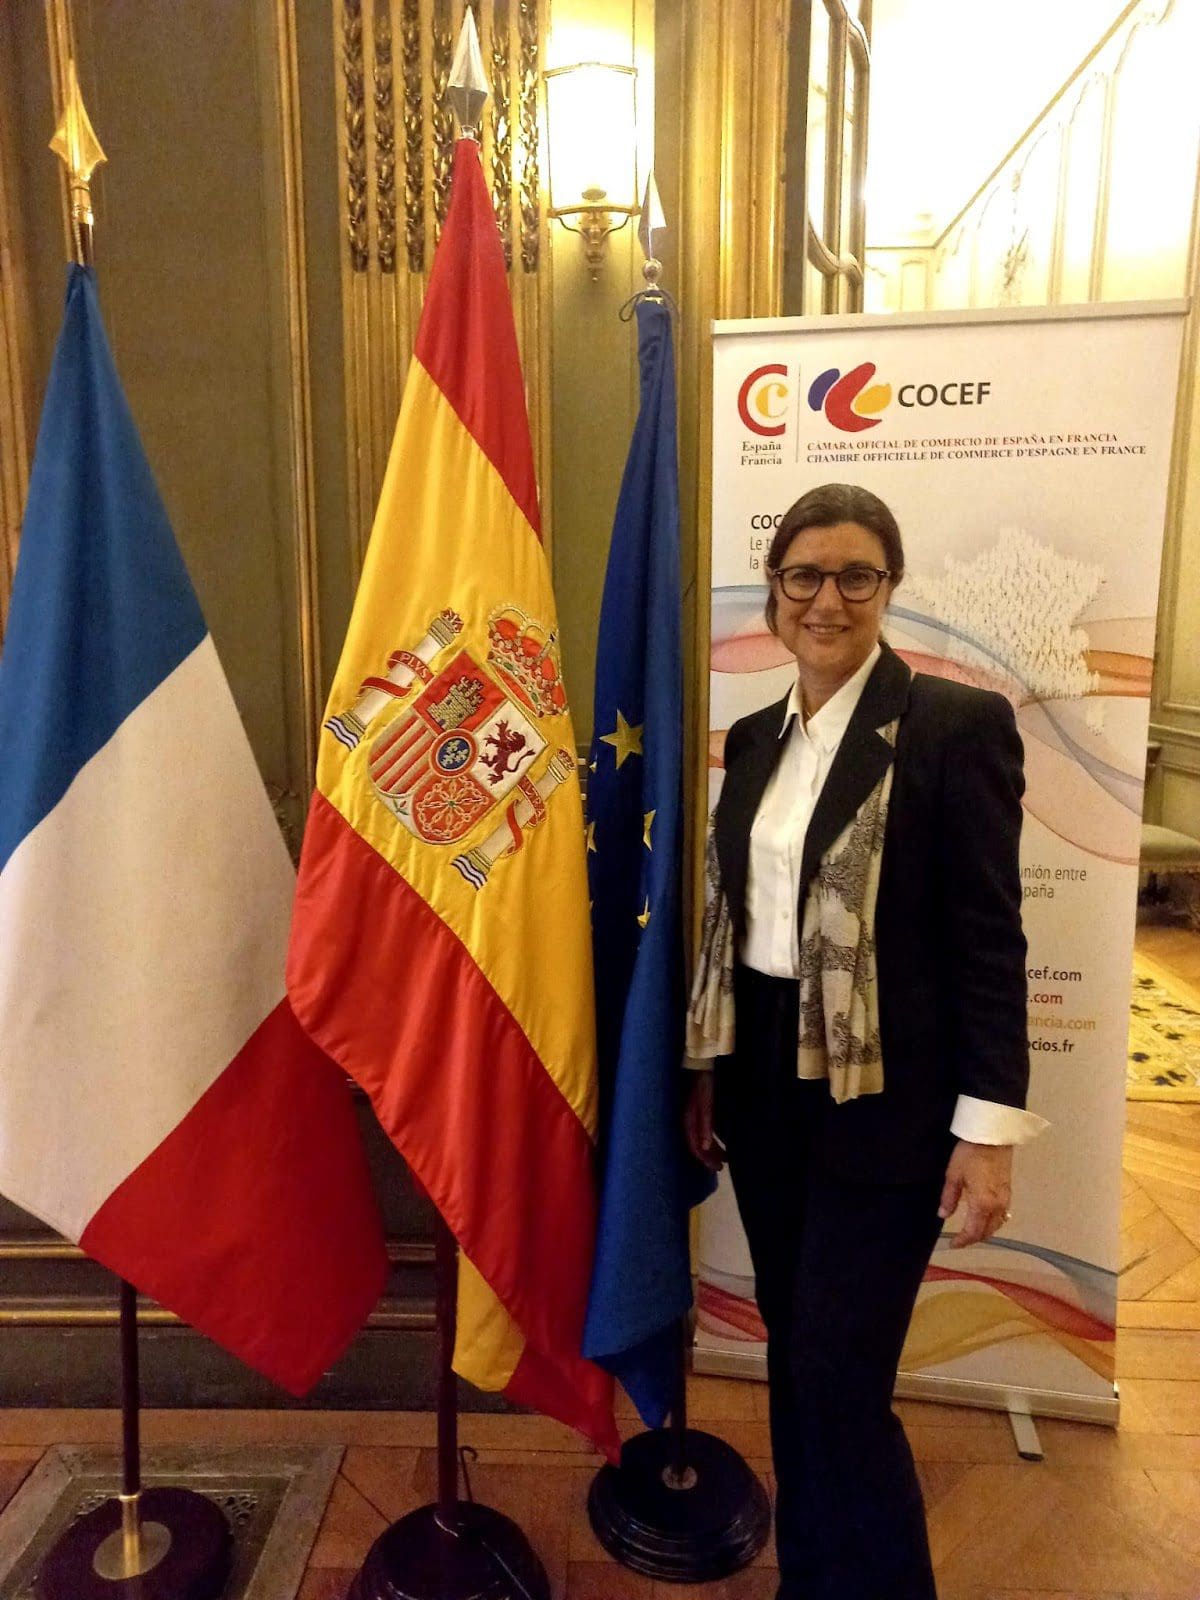 Nuevo presidente de la Cámara Oficial de Comercio de España en Francia (COCEF)